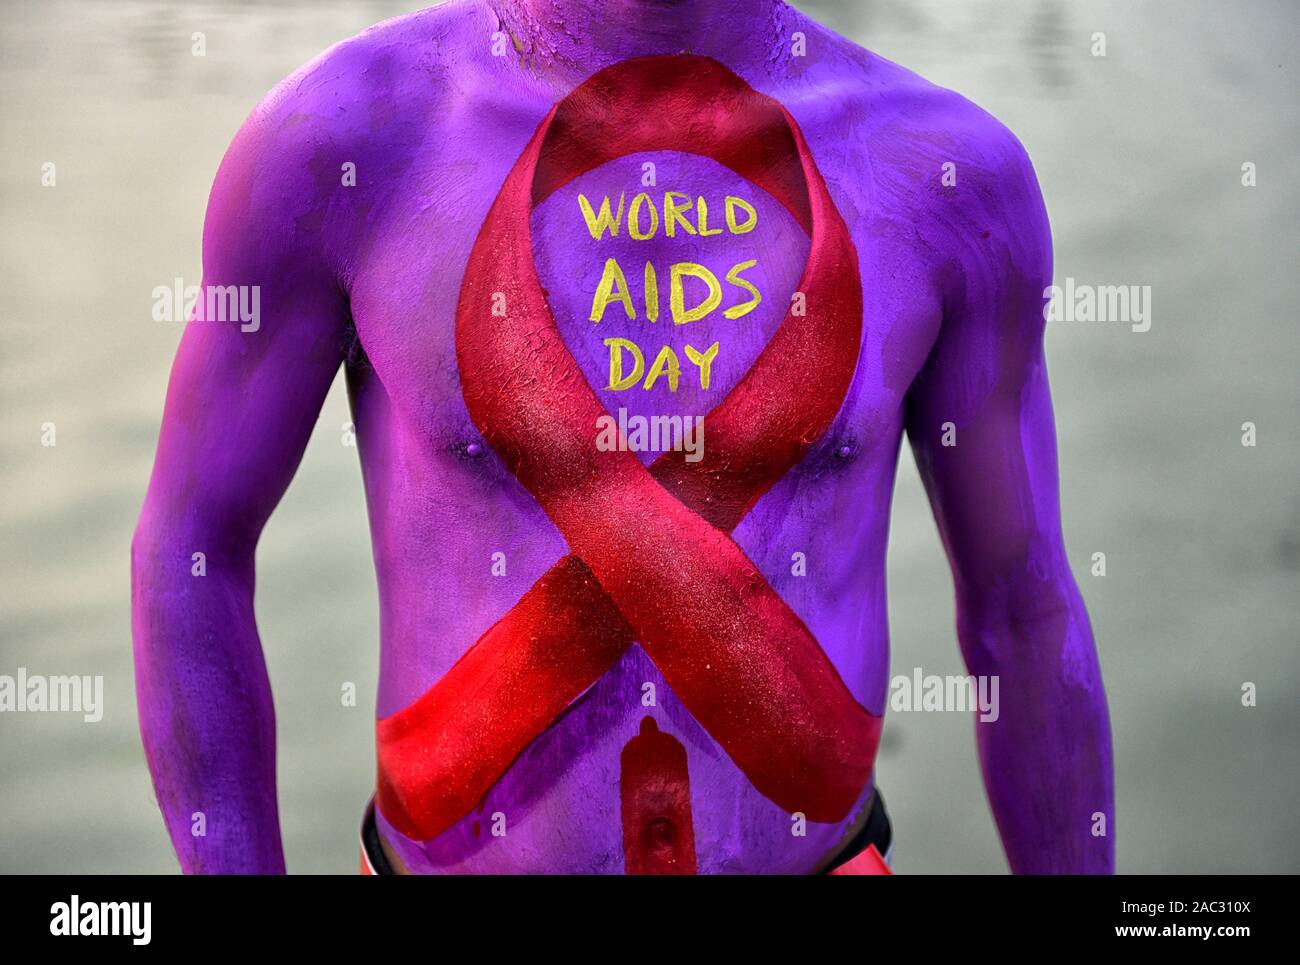 Ein Mann mit einem roten Band Malerei auf seinem Körper während des Welt-AIDS-Tag Welt-AIDS-Tag am 1. Dezember jedes Jahr seit 1988. Es ist eine Internationale Tag zur Sensibilisierung der AIDS-Pandemie durch die Ausbreitung der HIV-Infektion verursacht und Trauer, die an der Krankheit gestorben sind. Stockfoto